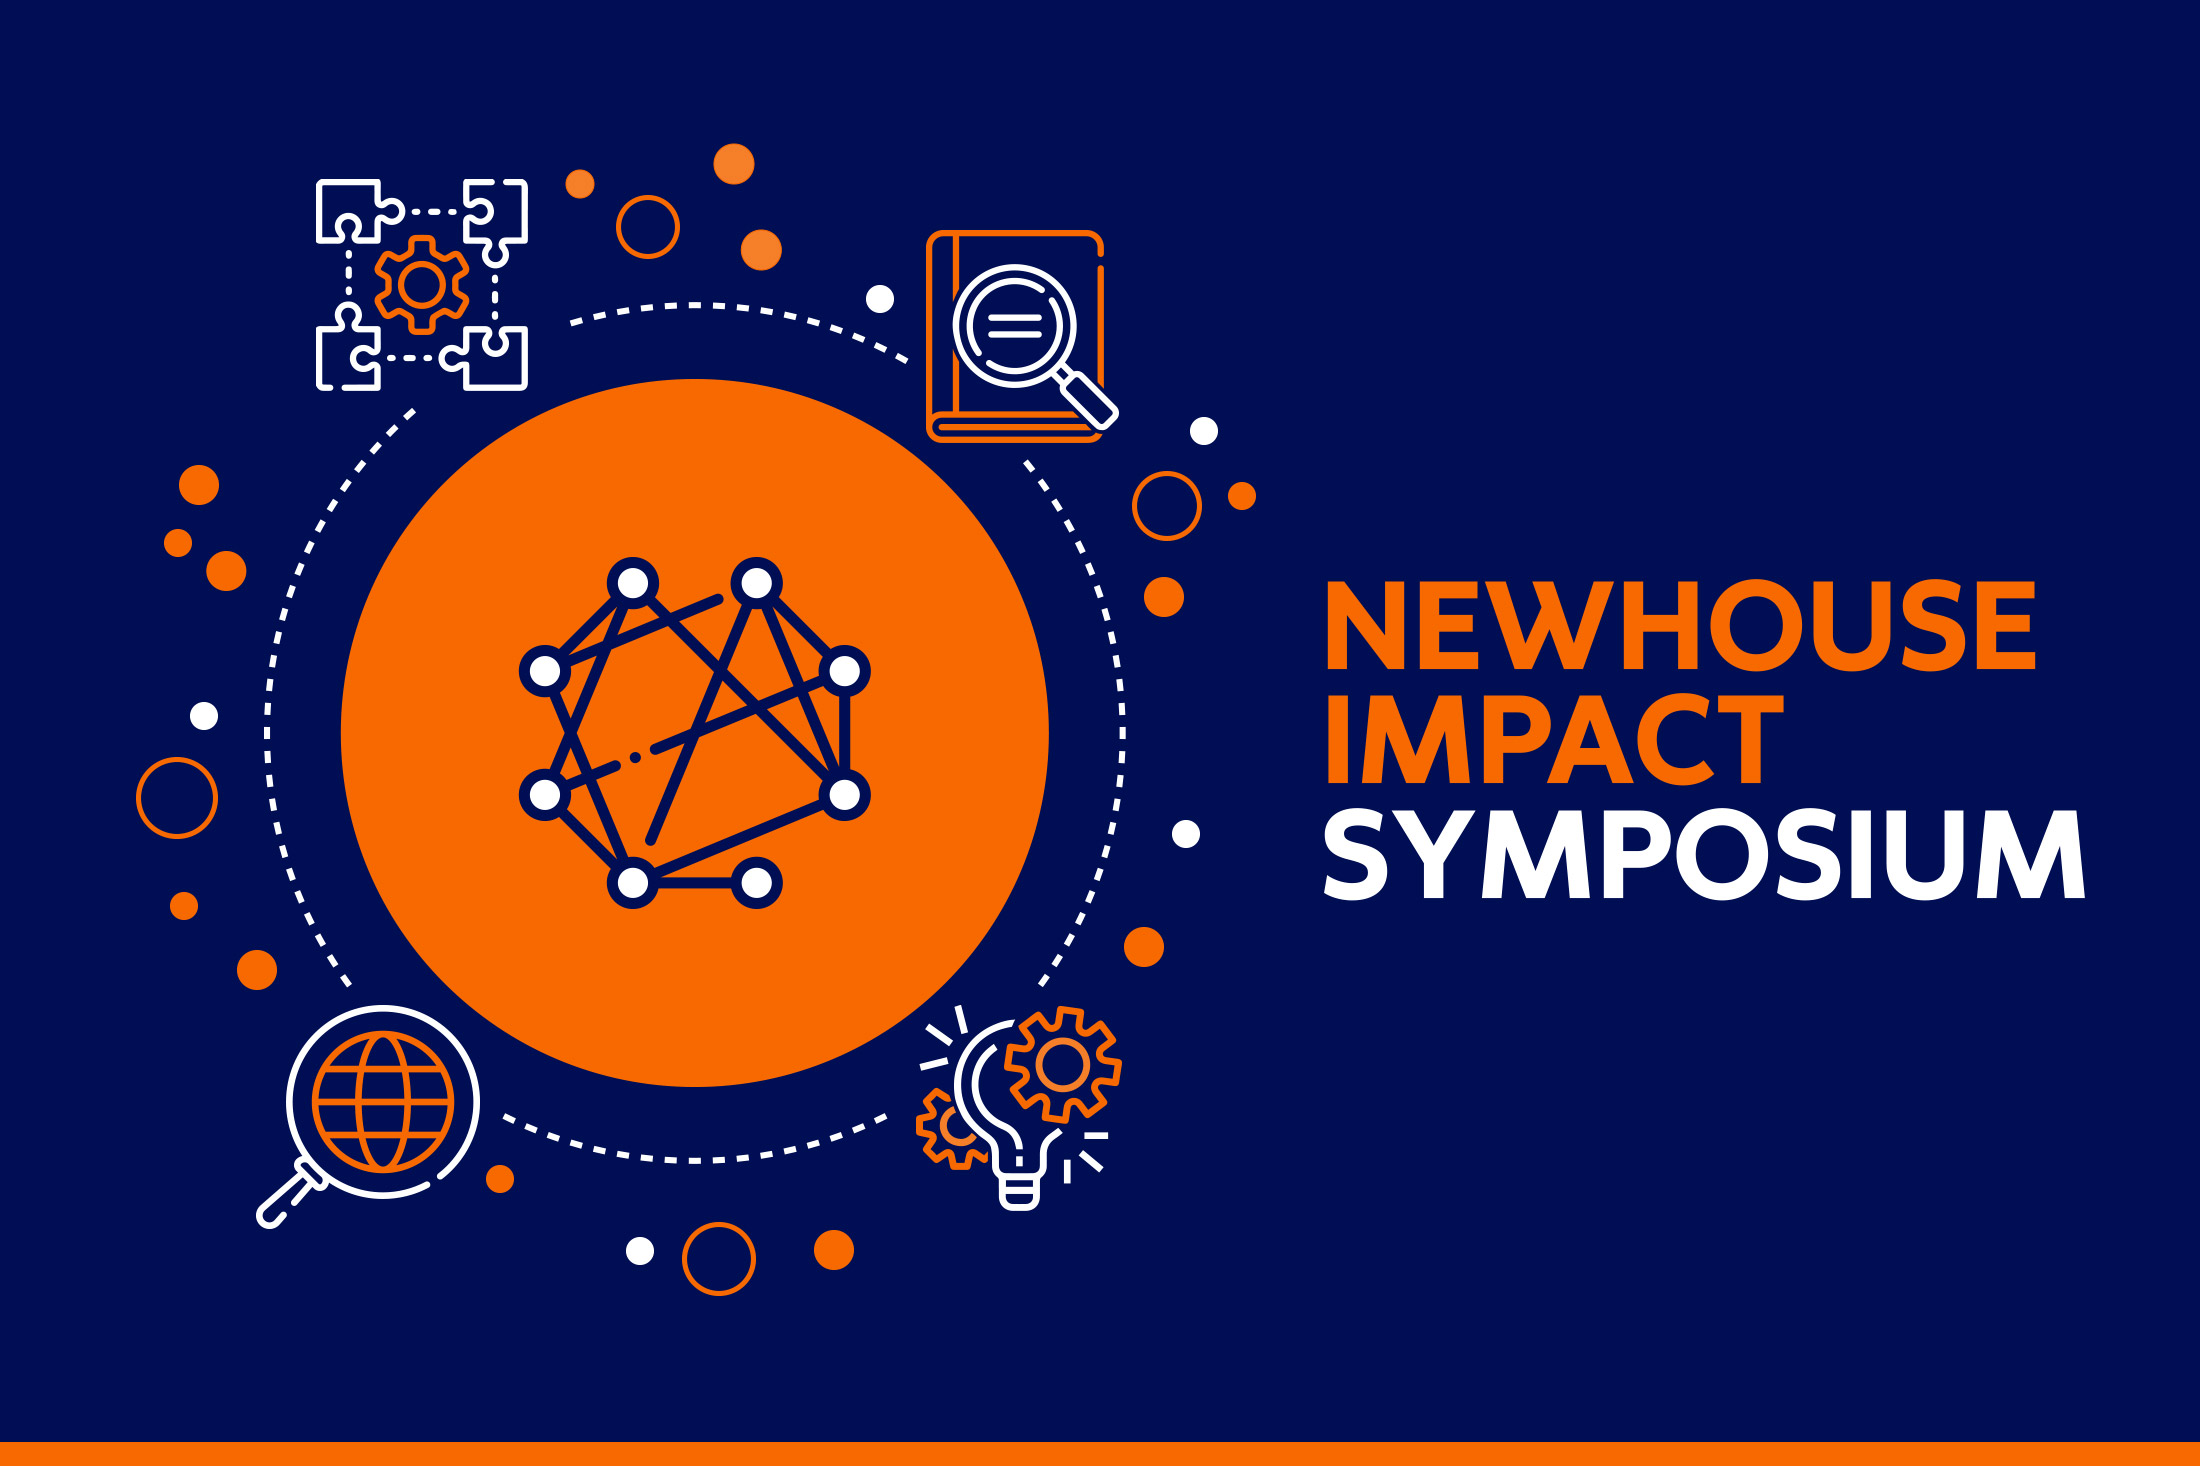 Impact symposium promotional image